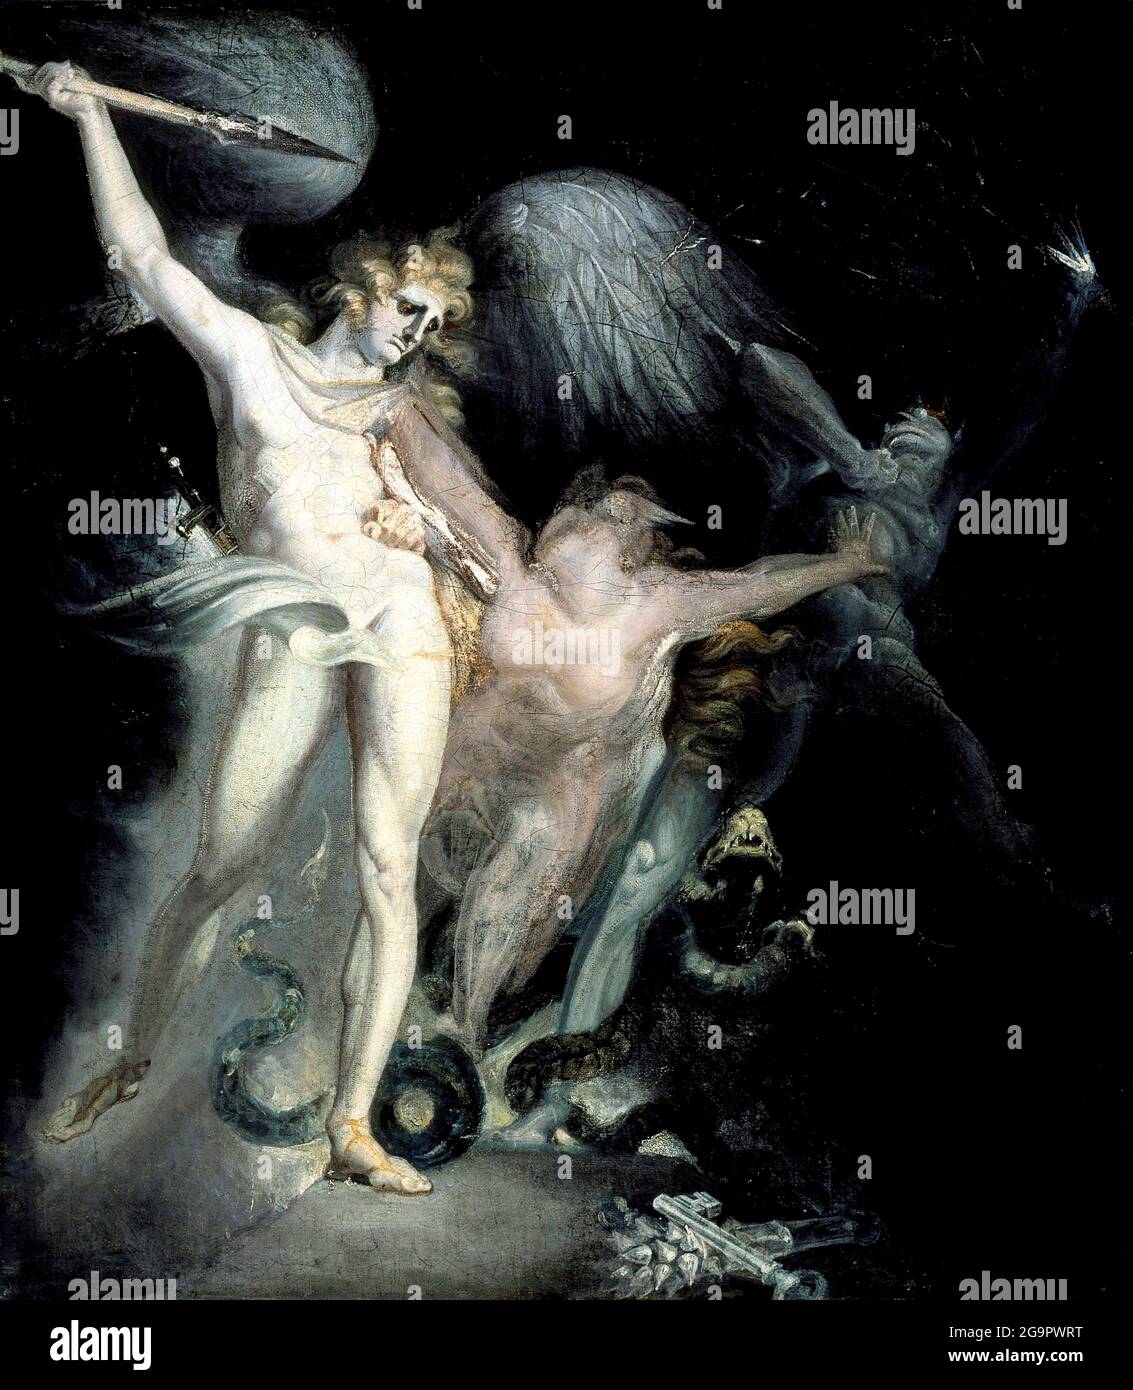 Satan and Death with Sin Intervening by Henry Fuseli (Johann Heinrich Füssli; 1741-1825), oil on canvas, 1799/1800 Stock Photo